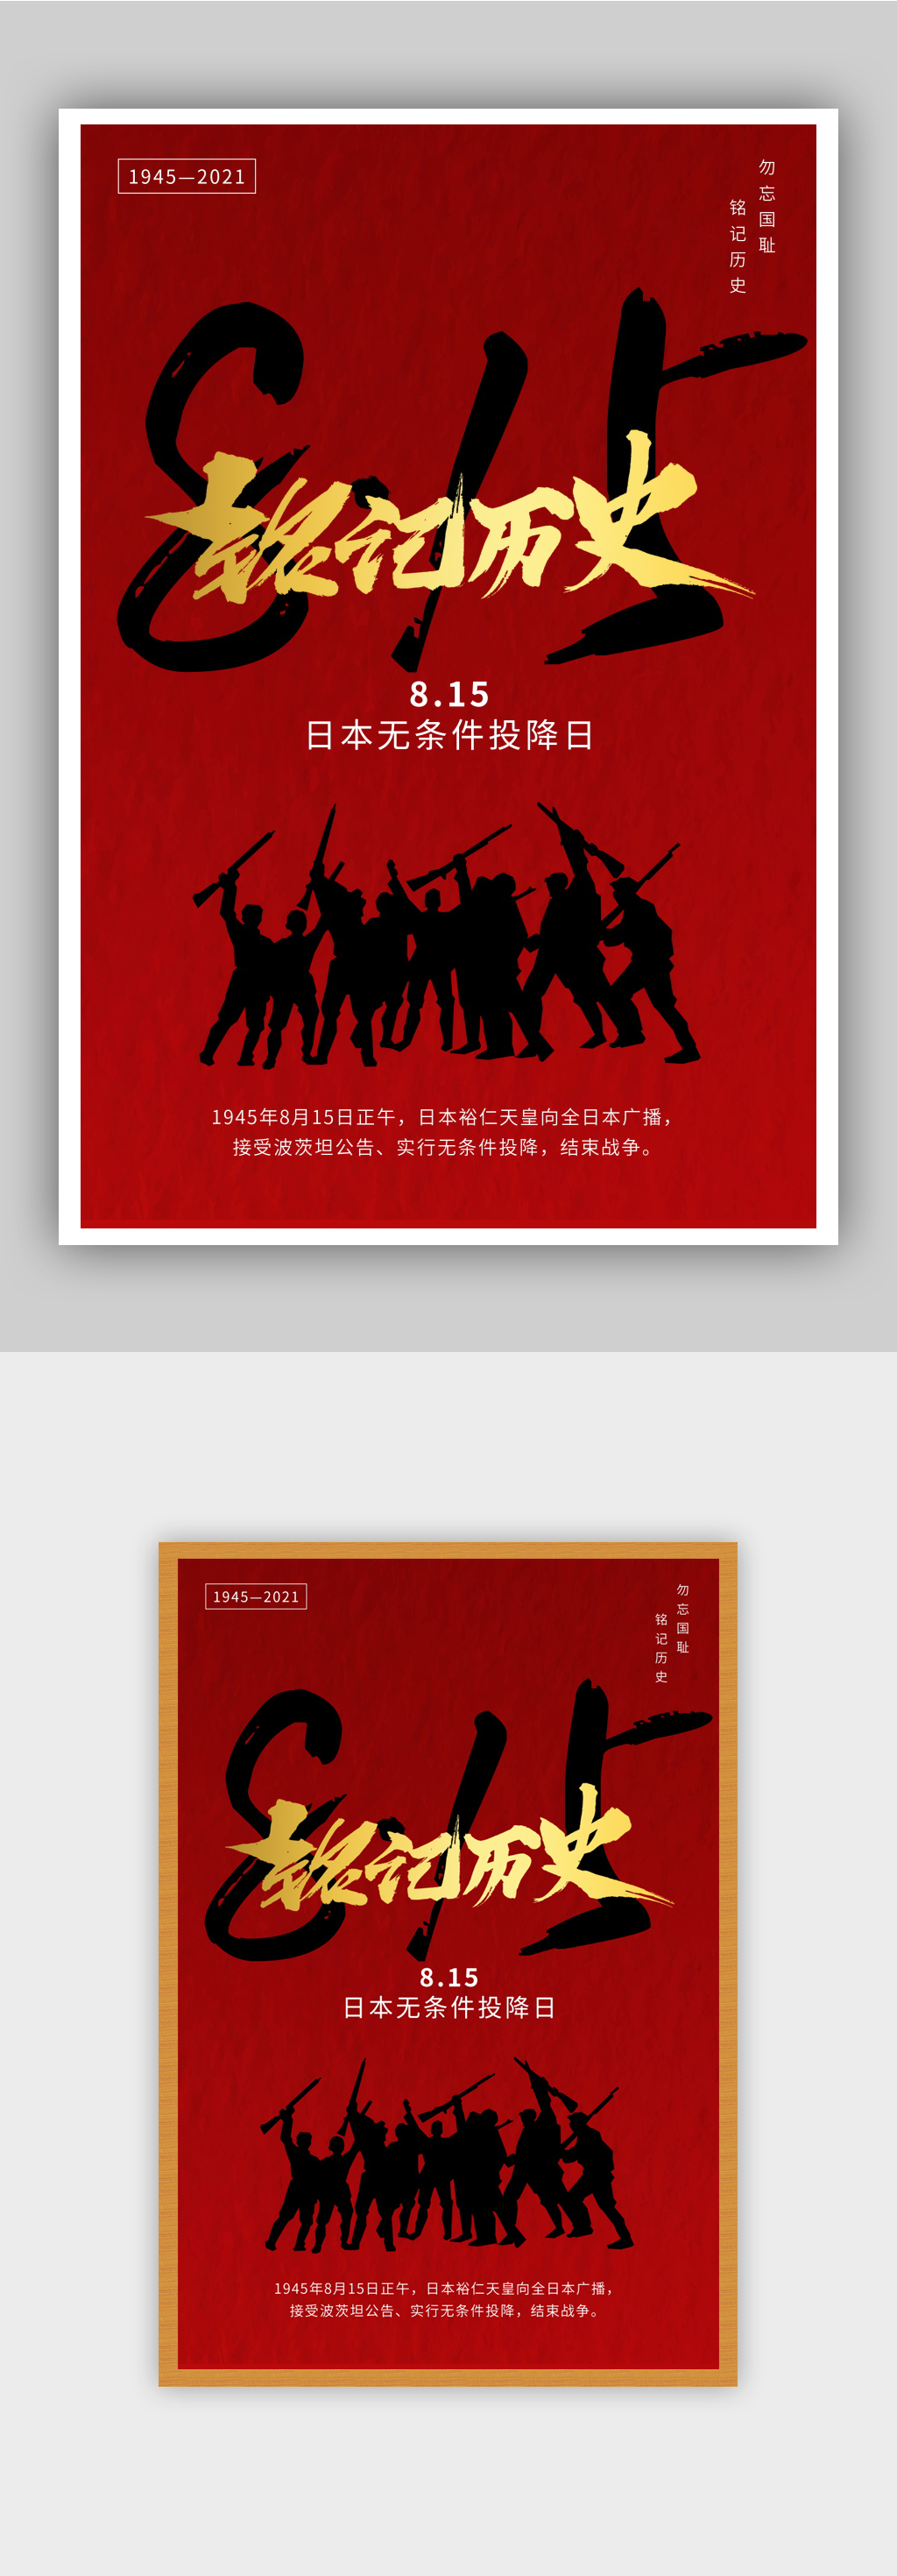 日本无条件投降纪念日海报设计